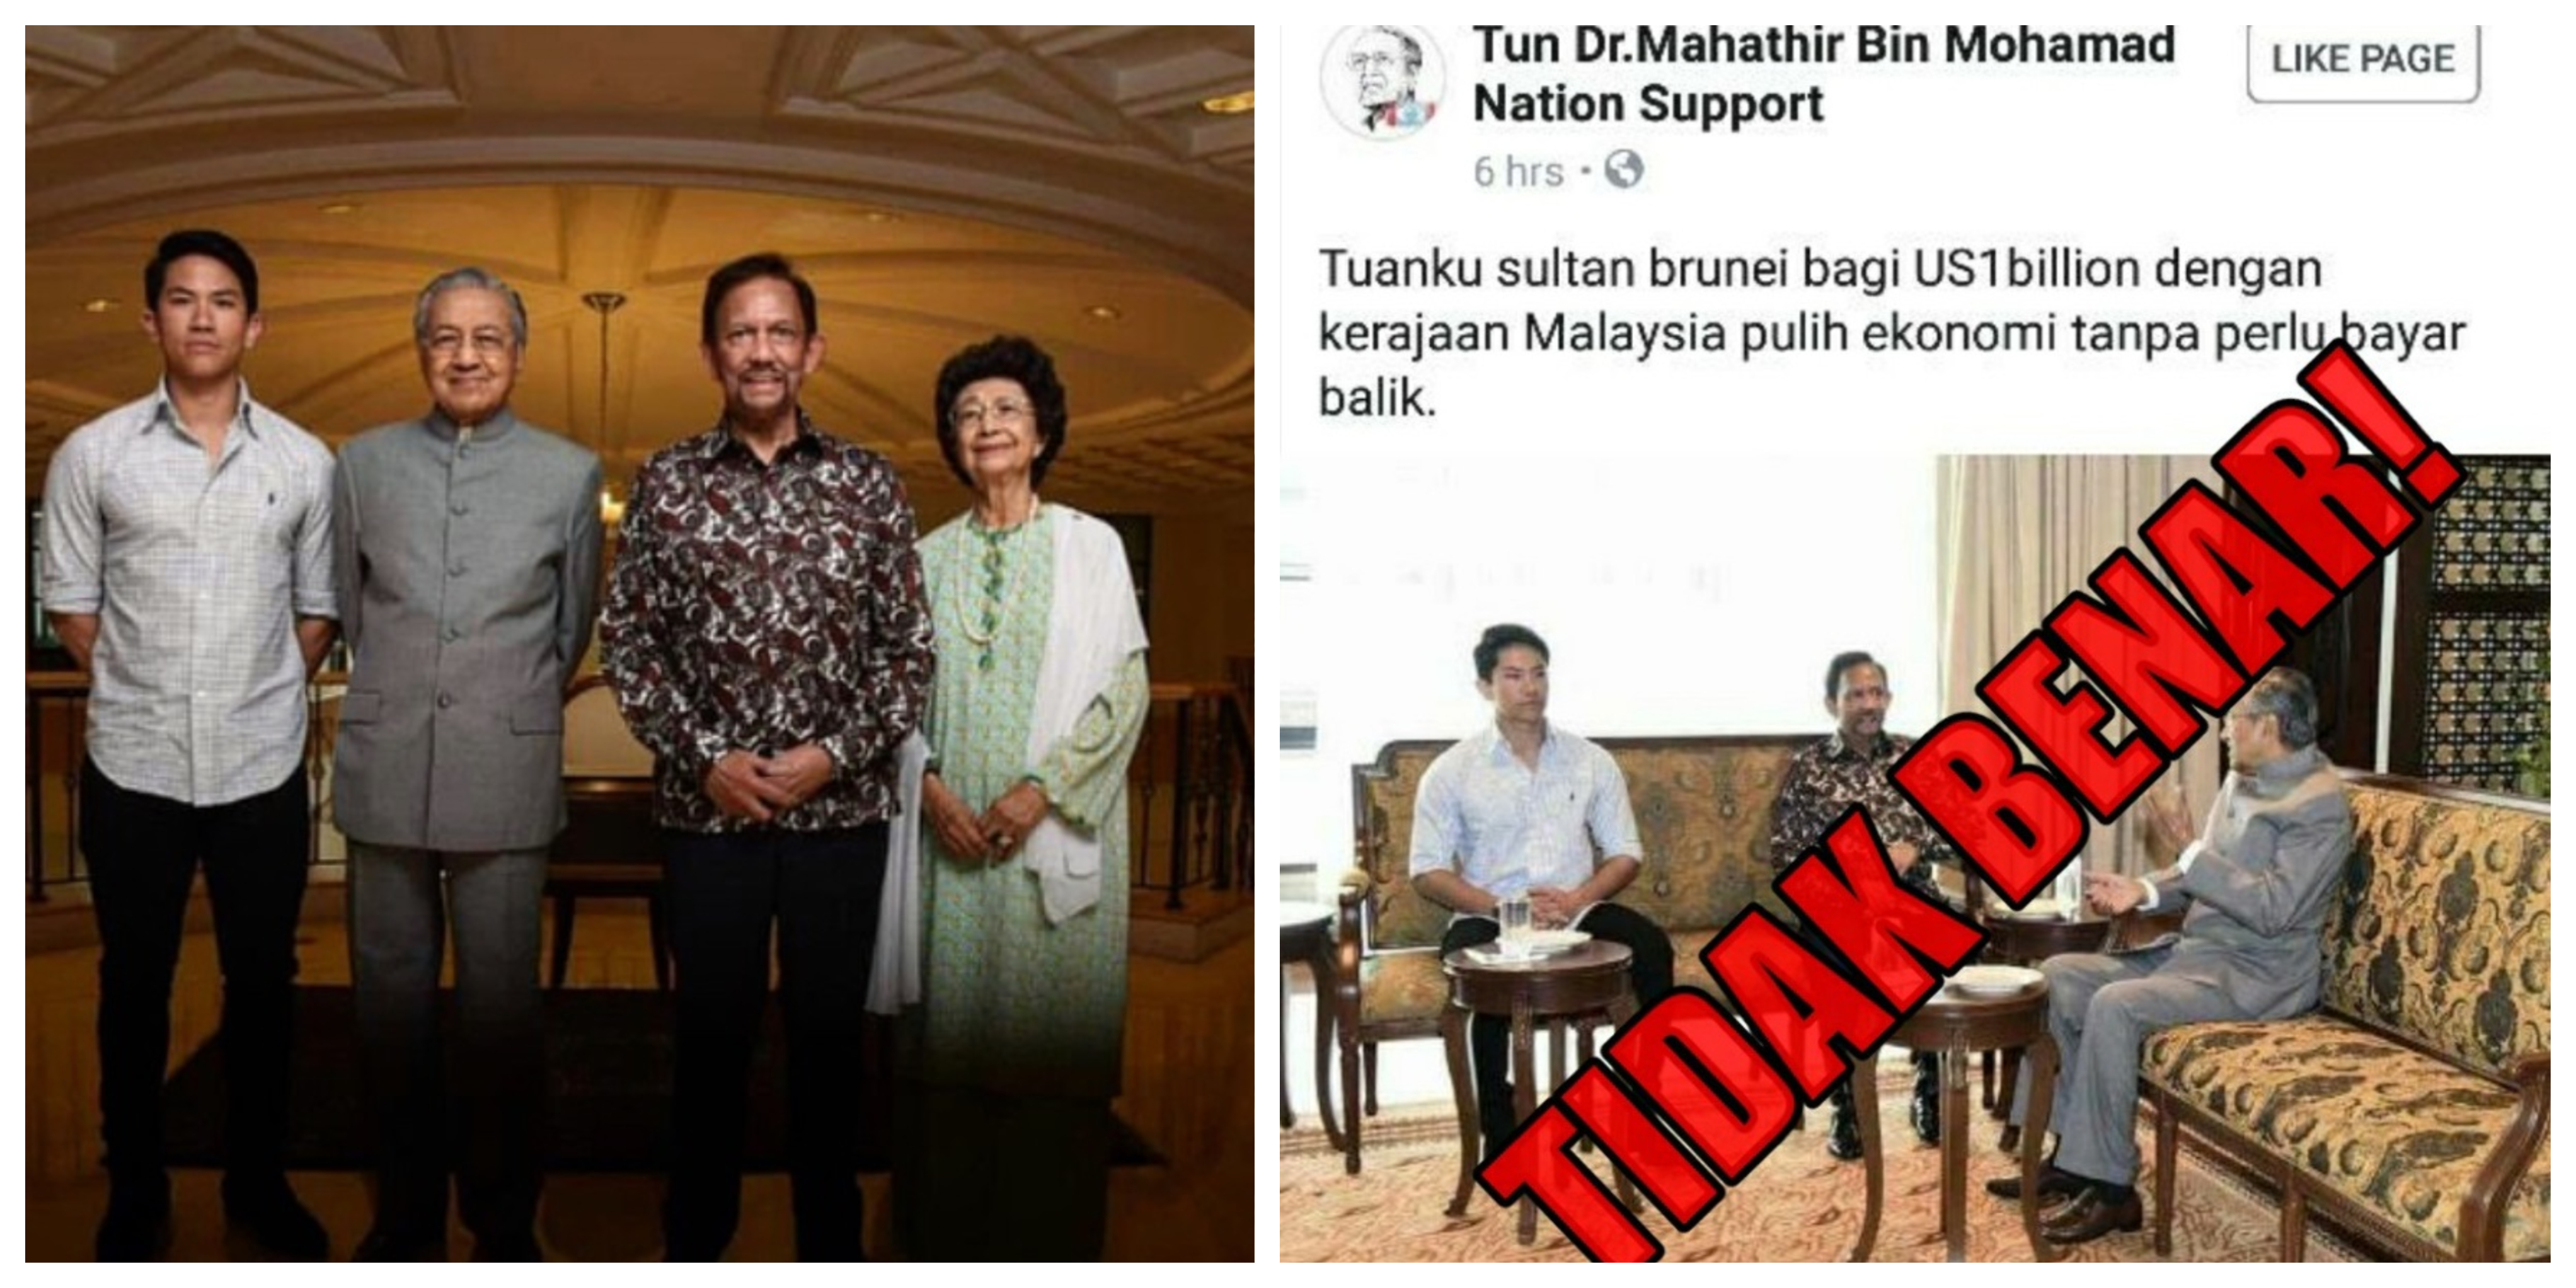 Sultan Brunei Tak ‘Derma’ Pun AS1$ Billion